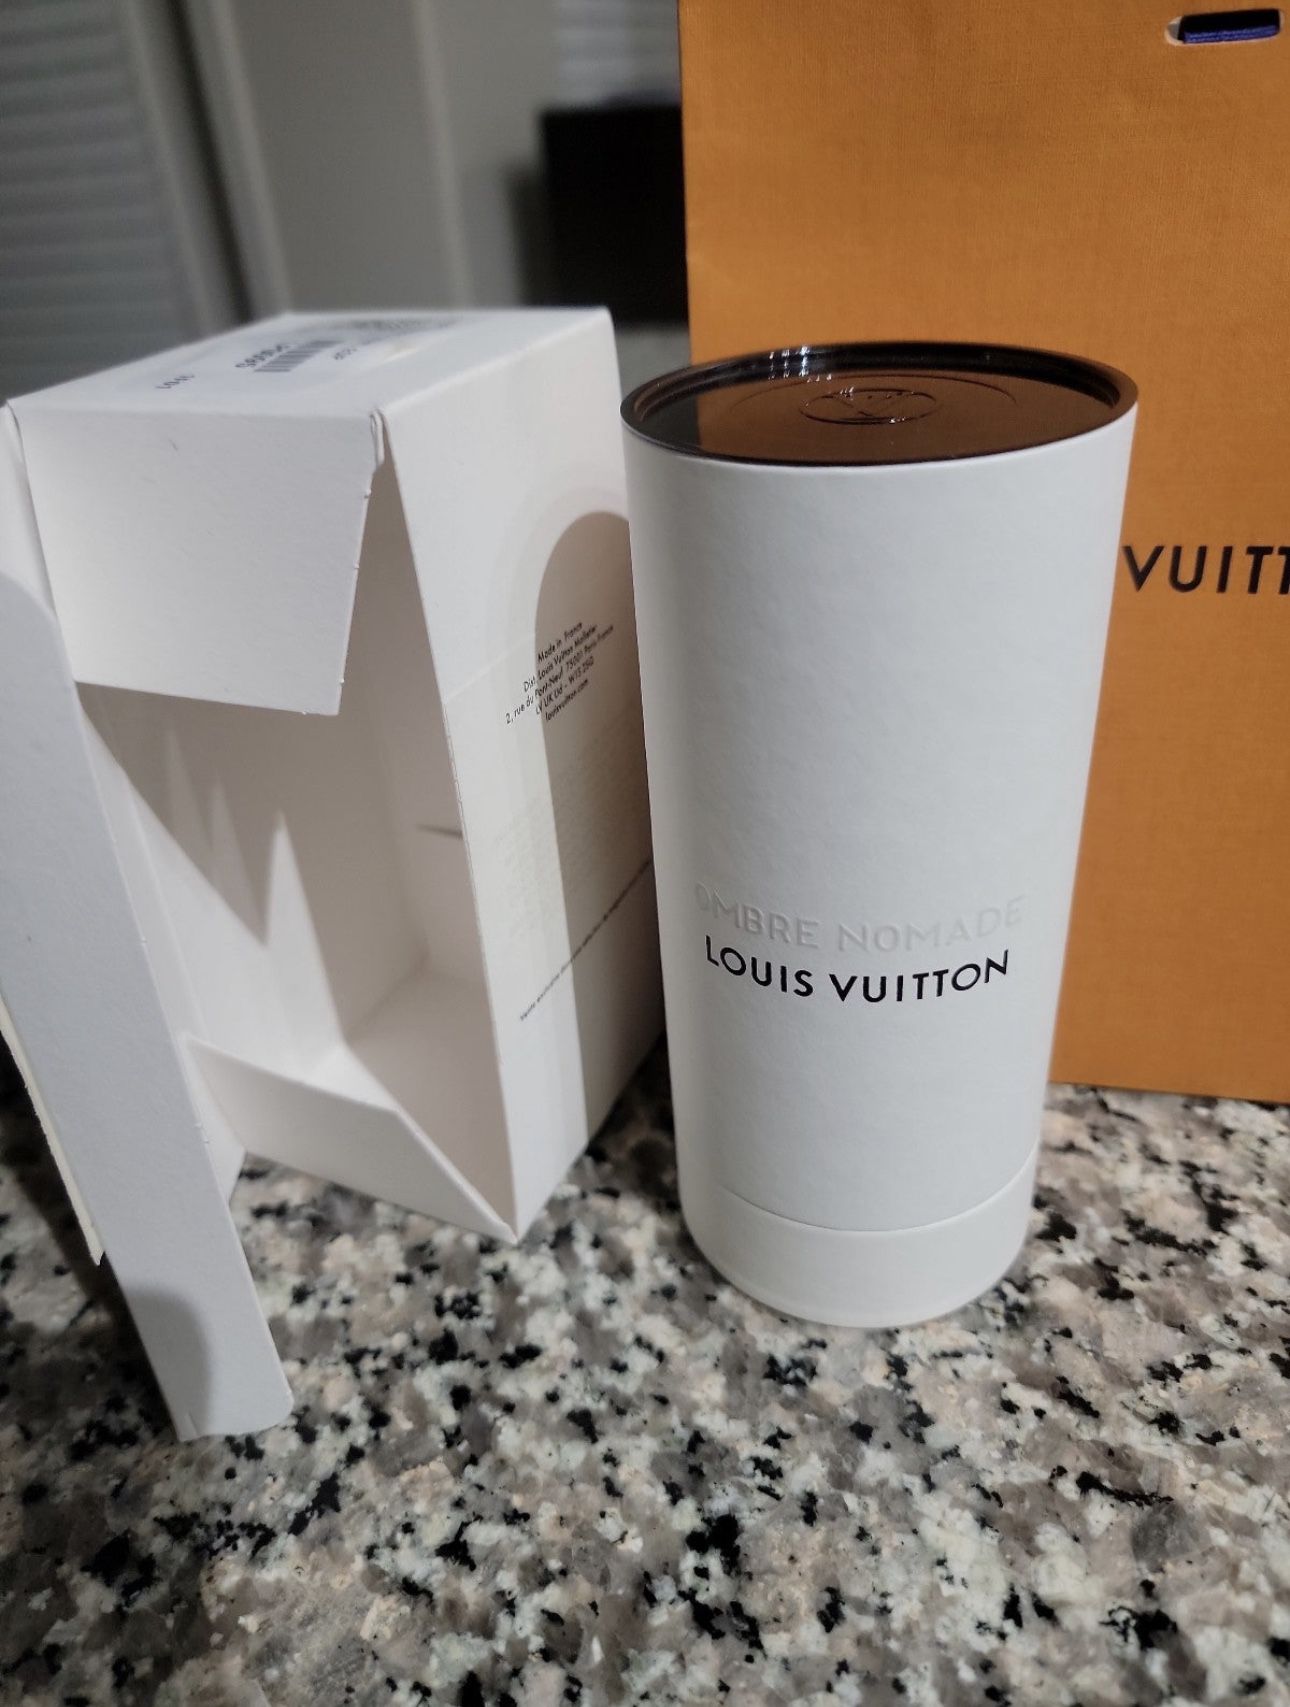 Louis Vuitton Ombré Nomade And Fleur Du Desert for Sale in Dallas, TX -  OfferUp